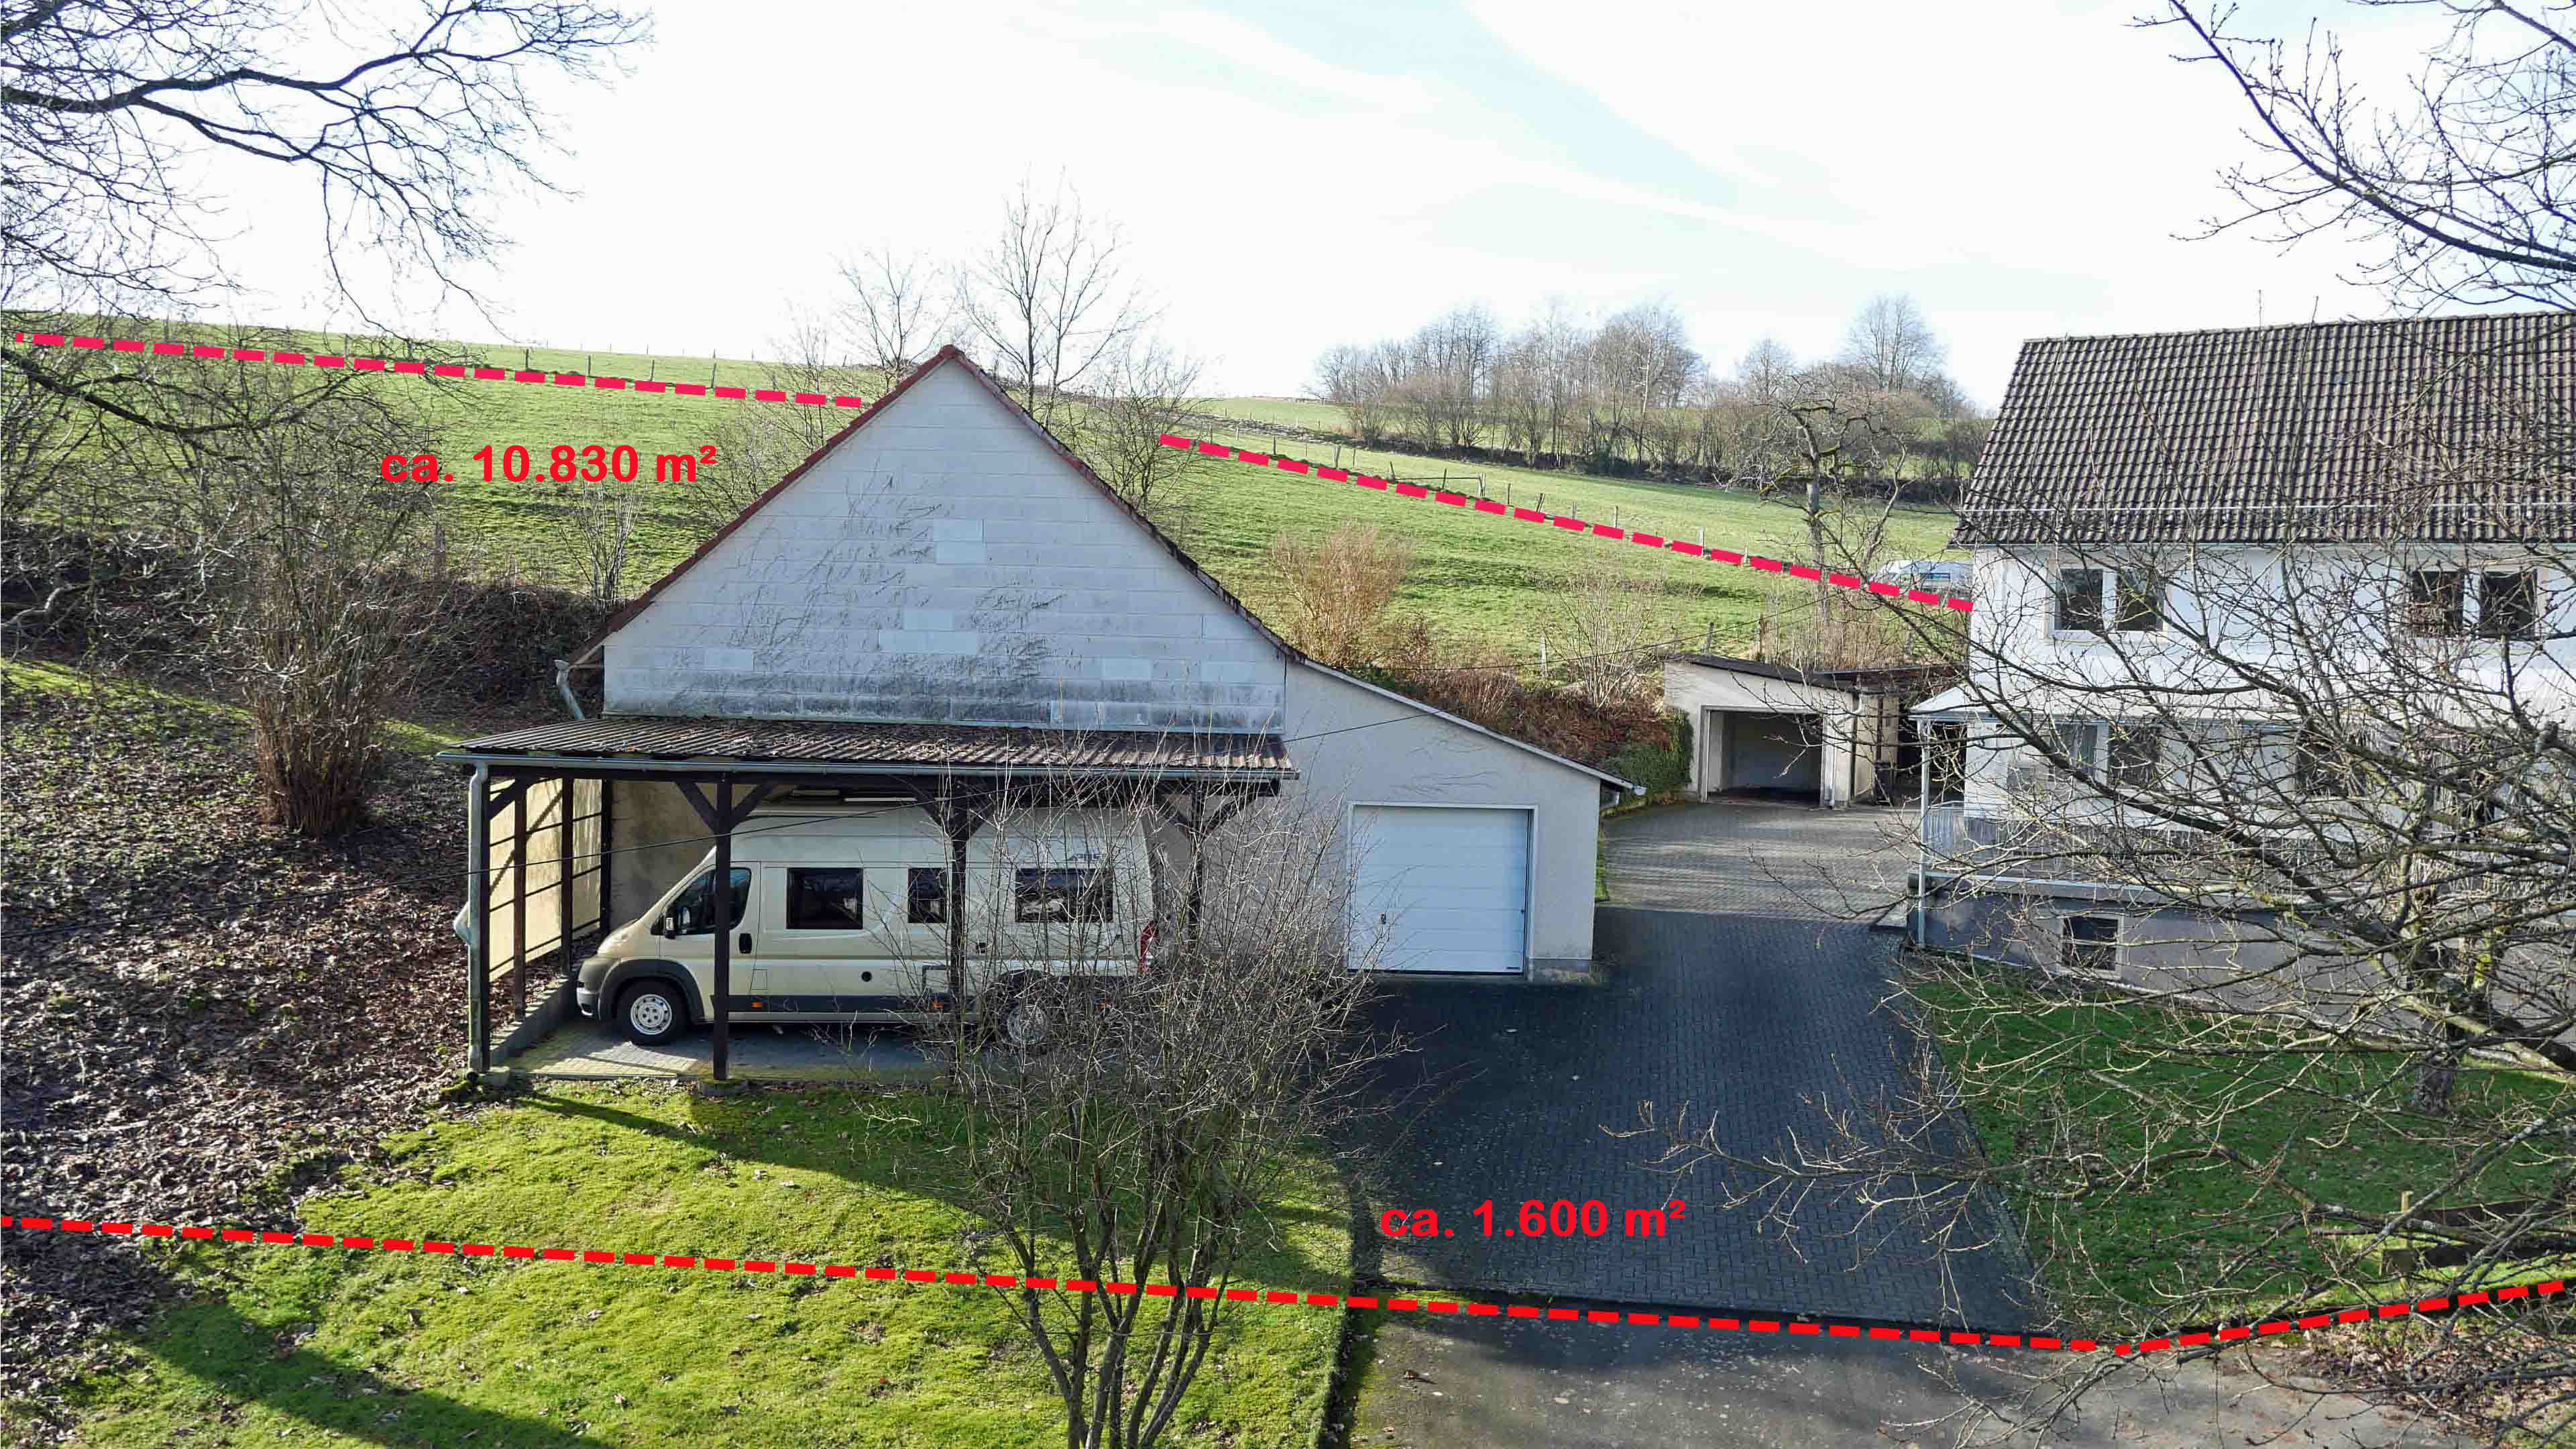 Morsbach-Ortseifen: Bauernhaus mit ELW, 2 Garagen, 2 Carports, Stall und 1,1 ha Weide, Bauernhof auf insges. 12.429 m² Grundstück